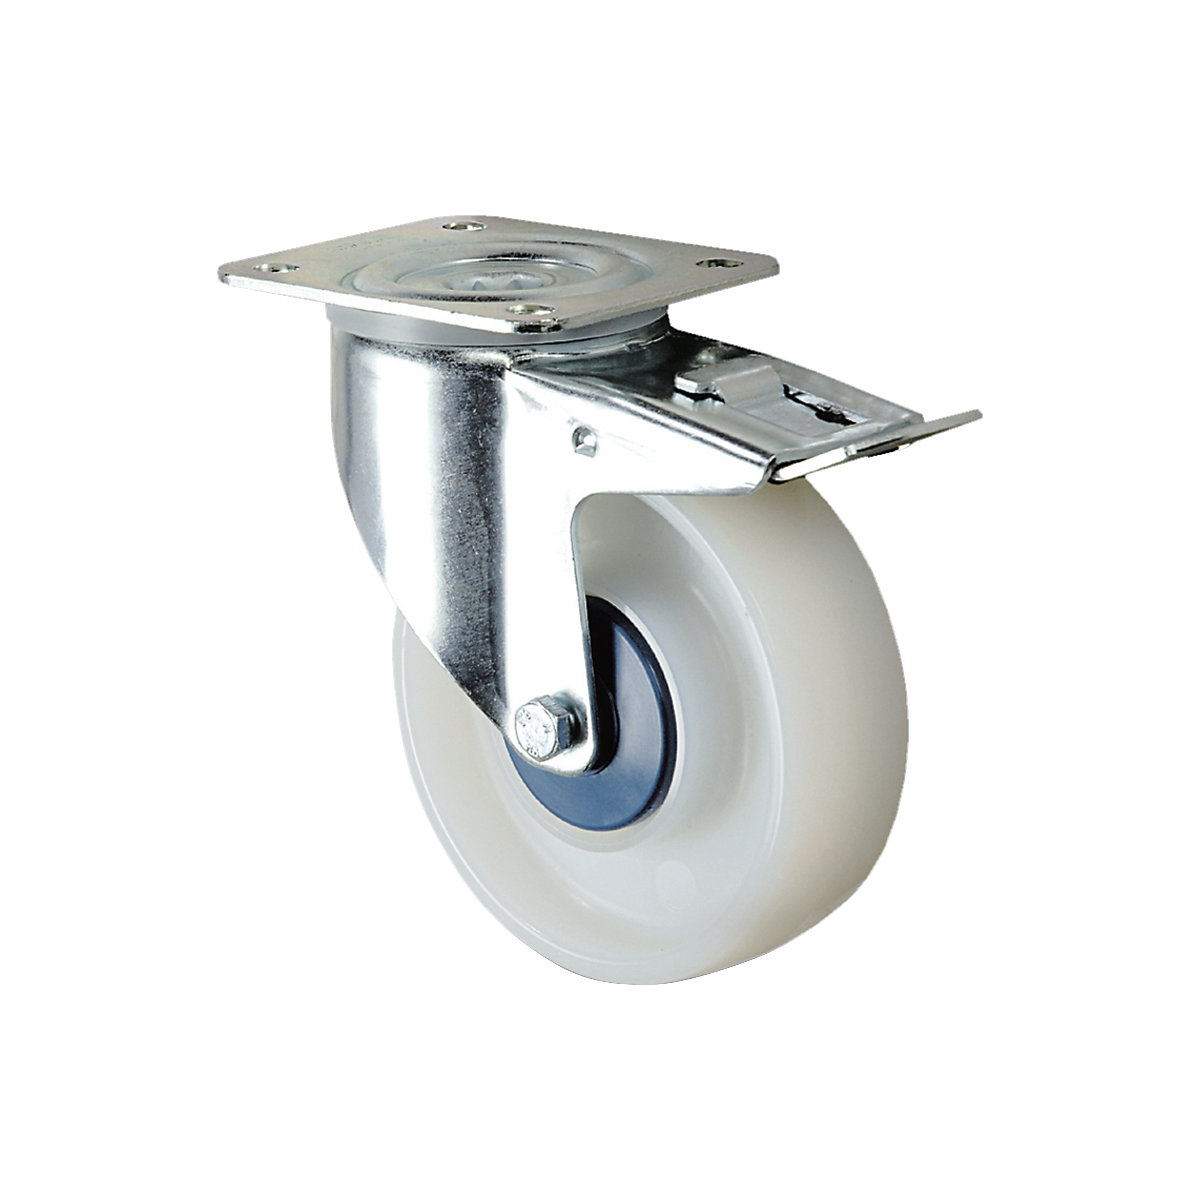 Roue polyamide, blanche – TENTE, Ø x largeur roues 100 x 36 mm, roulette pivotante avec blocage double-4